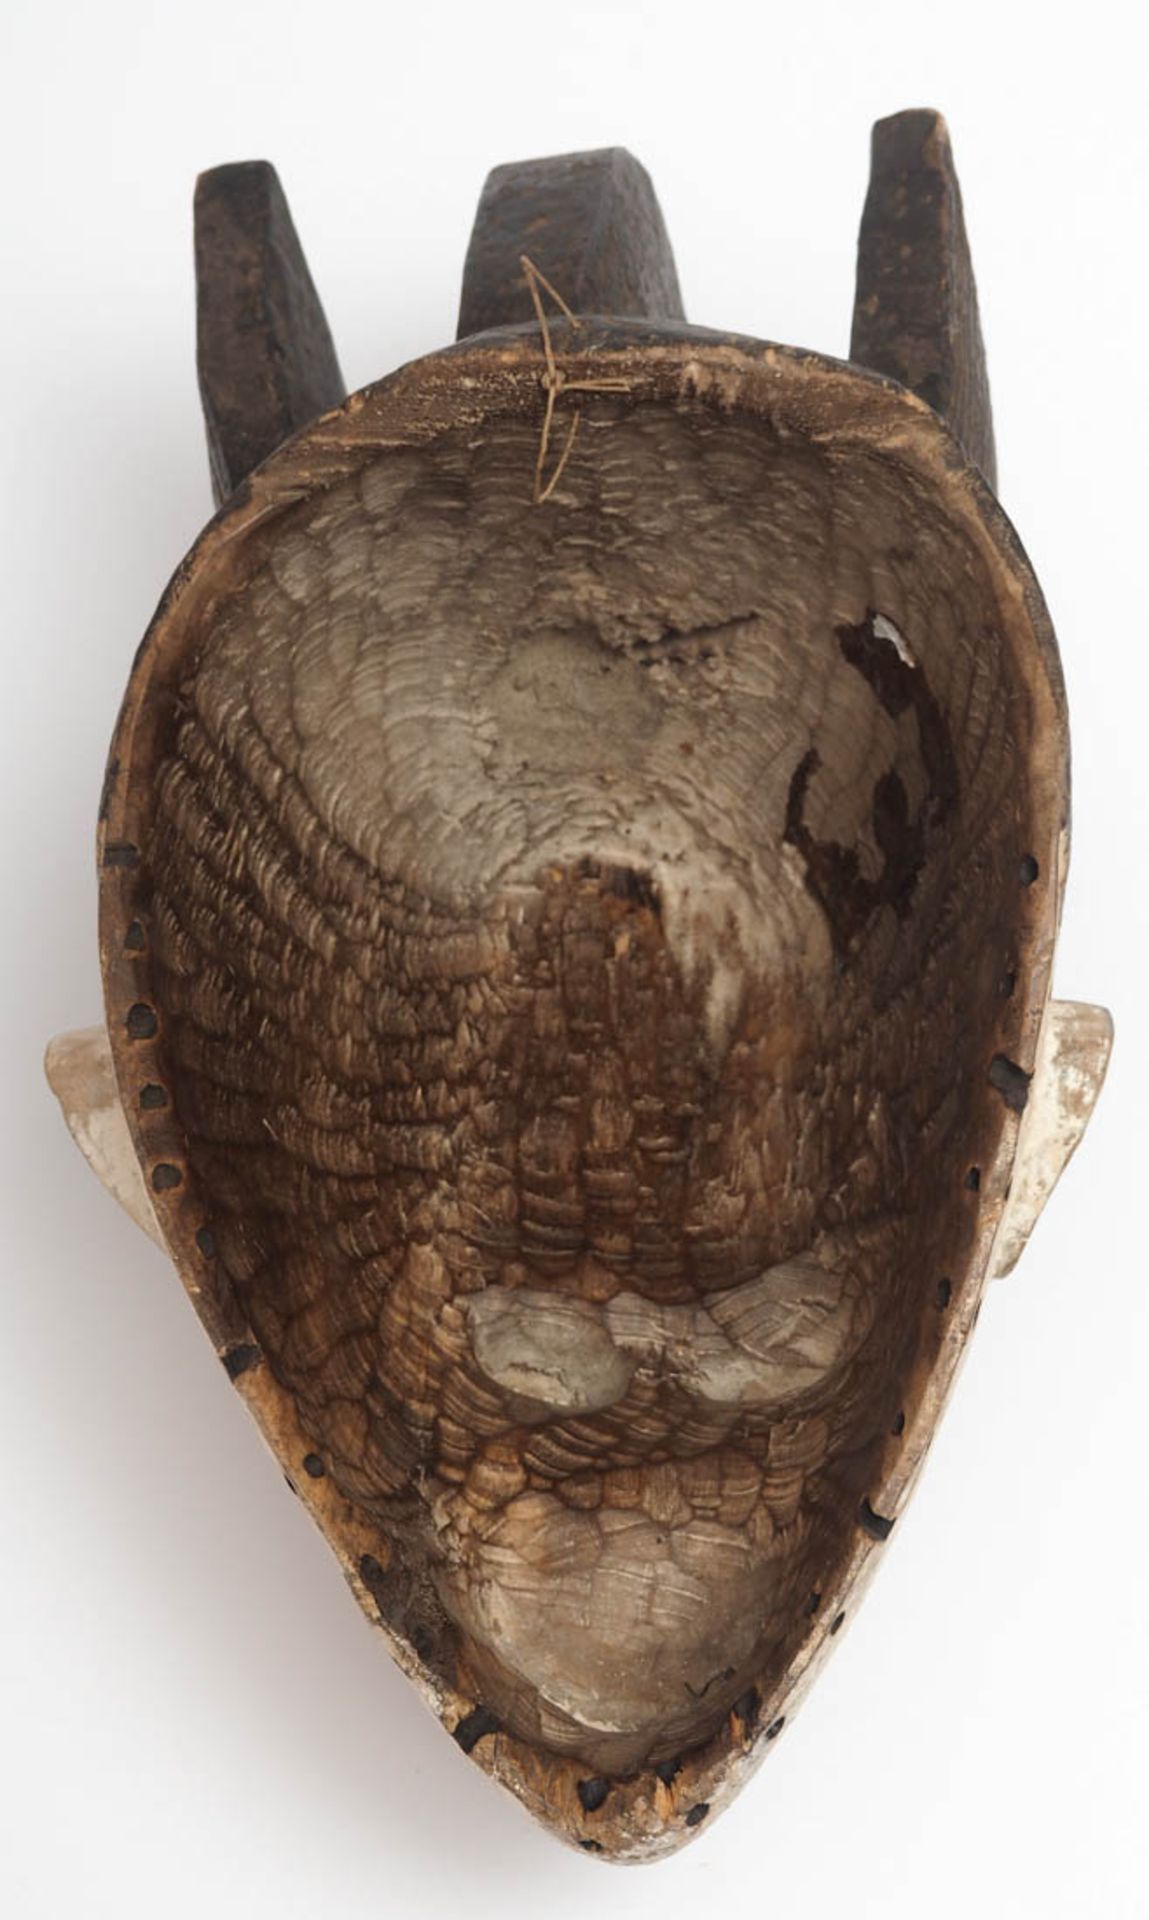 Maske des Mmwo-Geheimbundes, Ibo, Nigeria Holz, geschnitzt, partiell geschwärzt bzw. weiß gekalkt. - Bild 4 aus 5